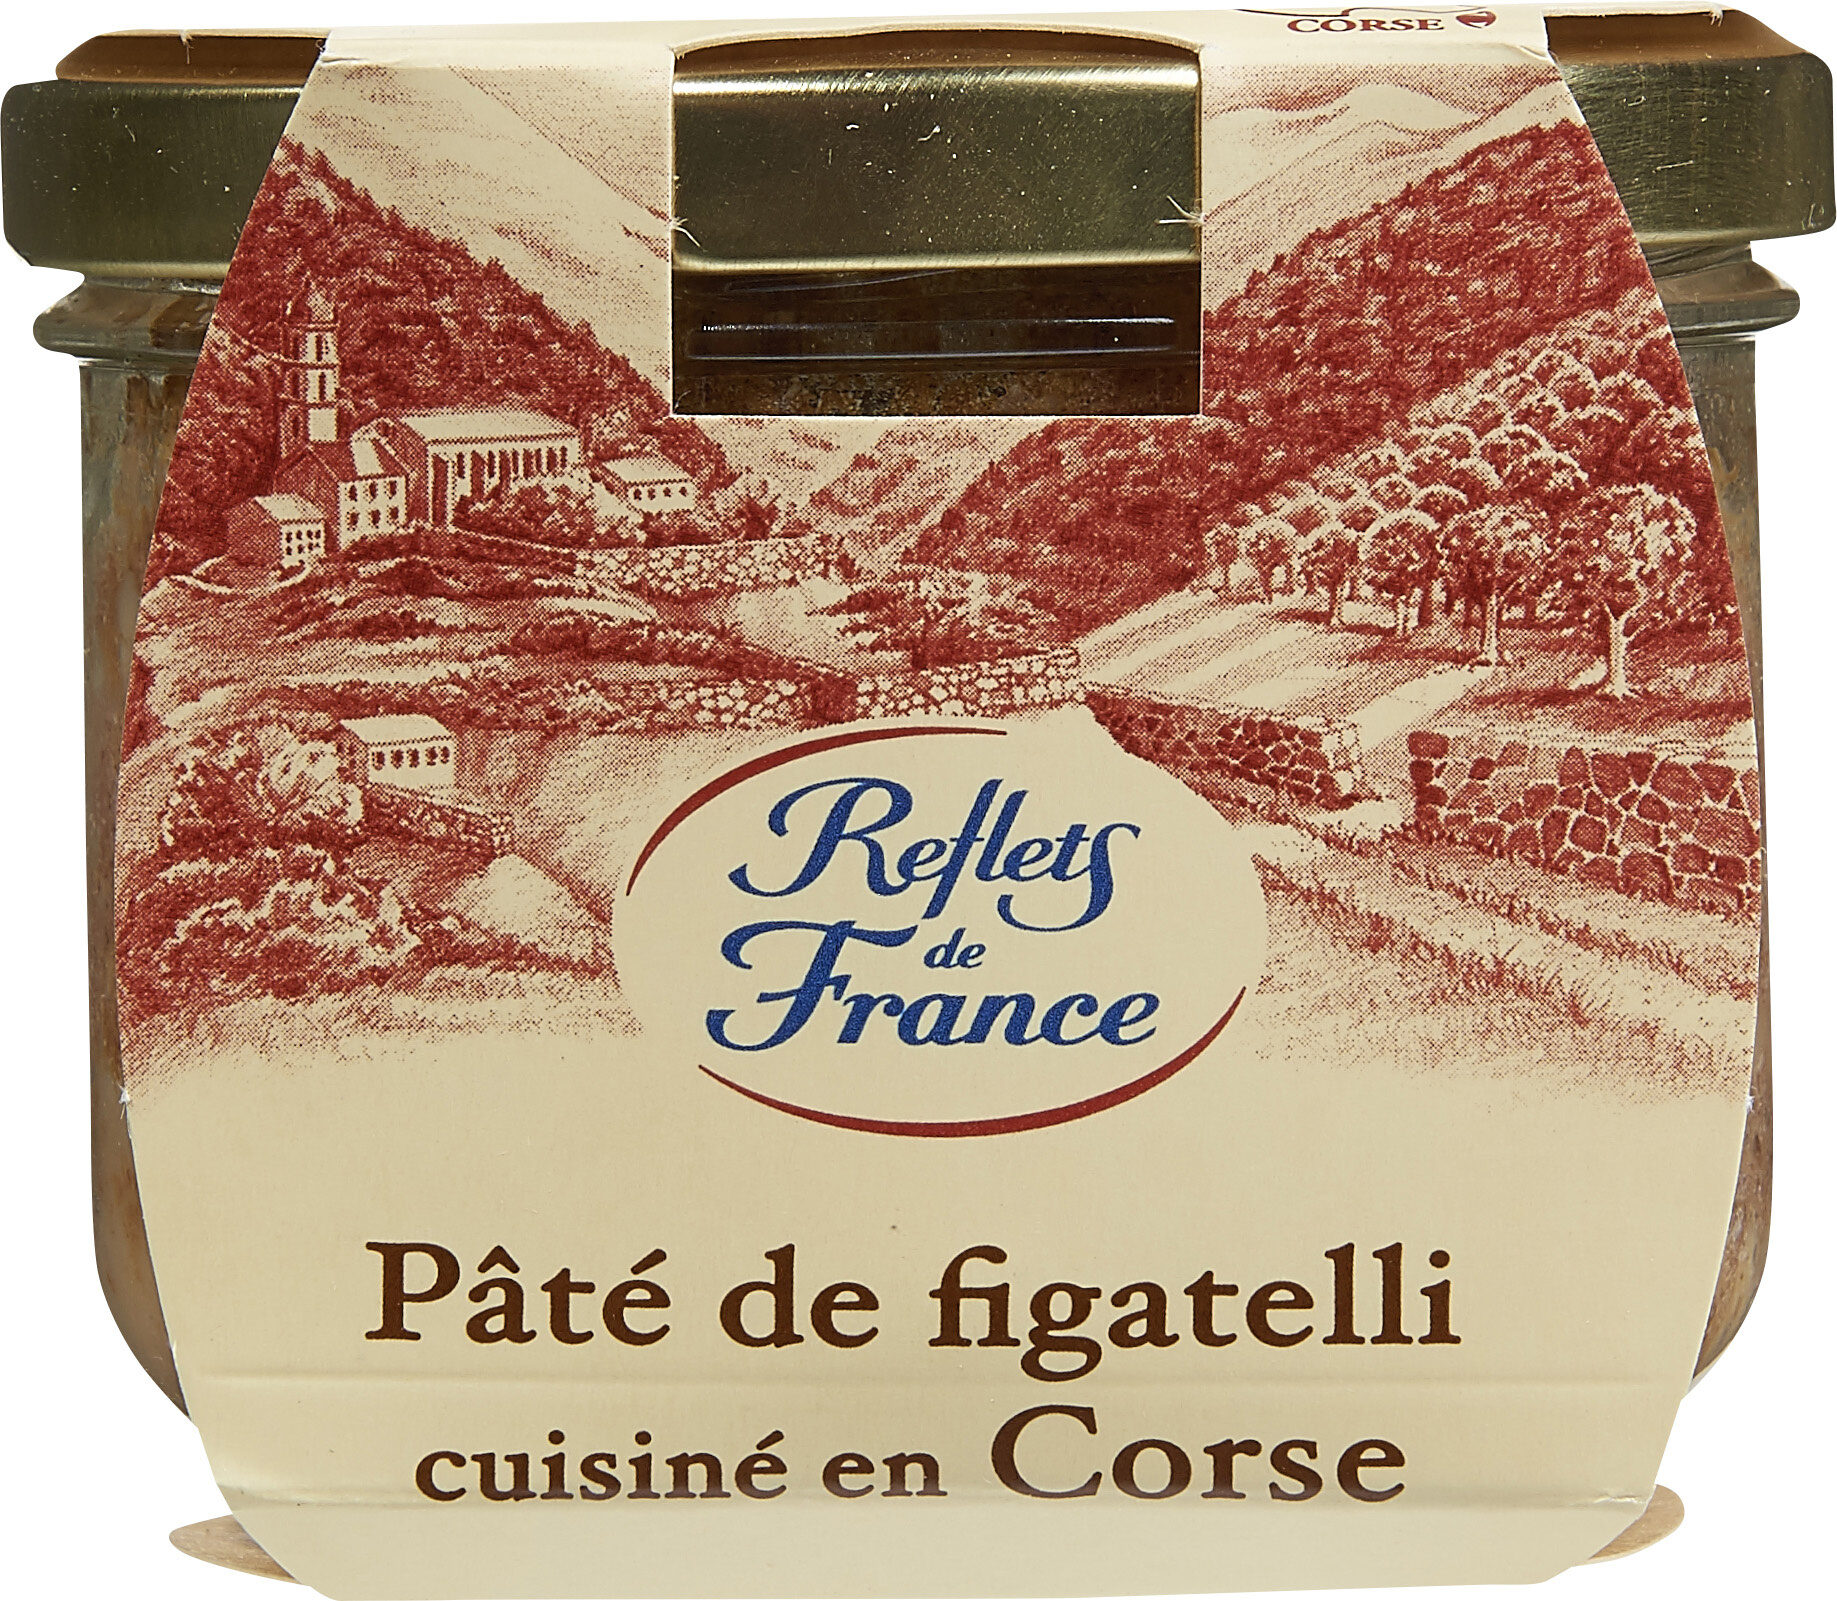 Pâté de Figatelli - Product - fr